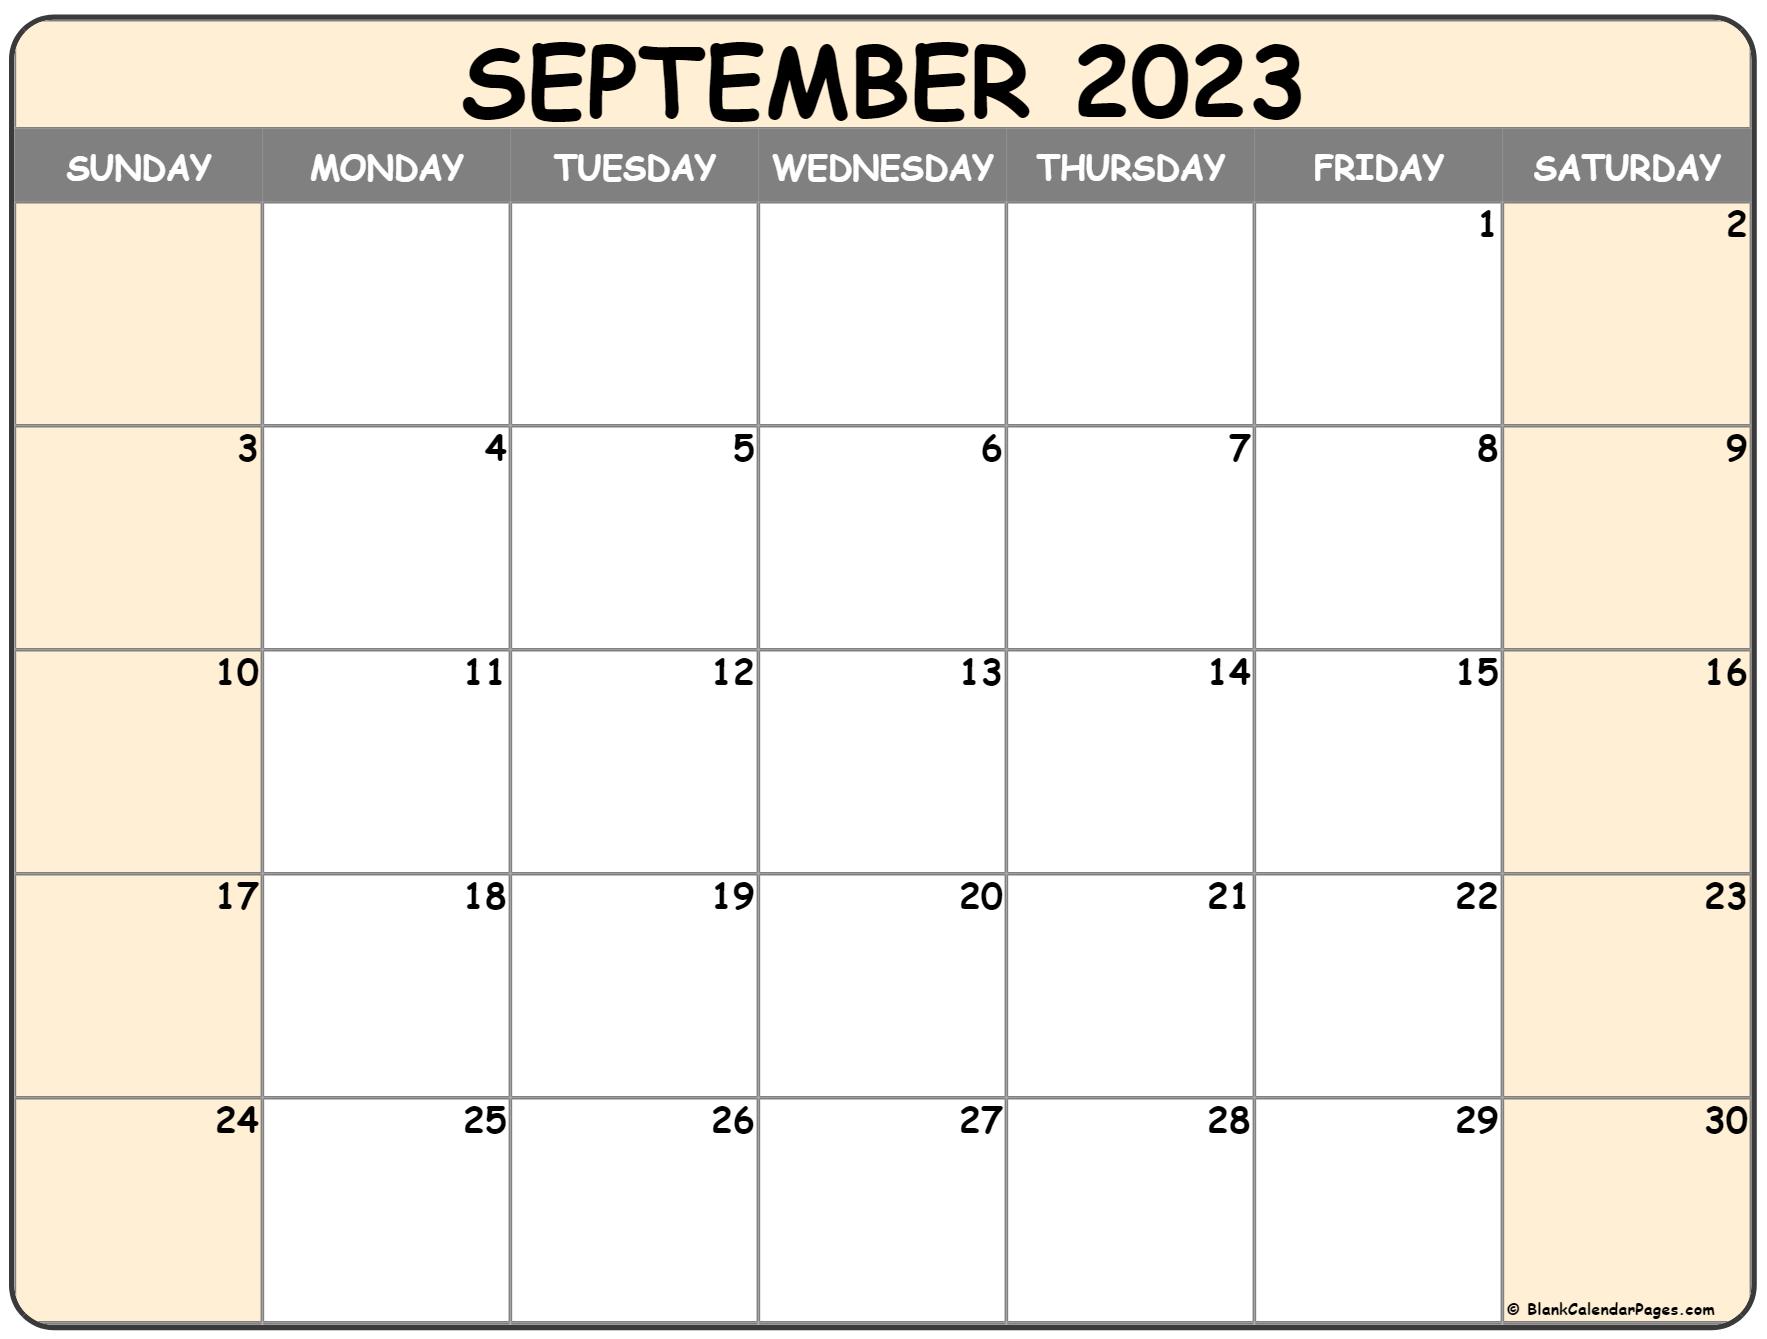 september-2023-calendar-editable-pelajaran